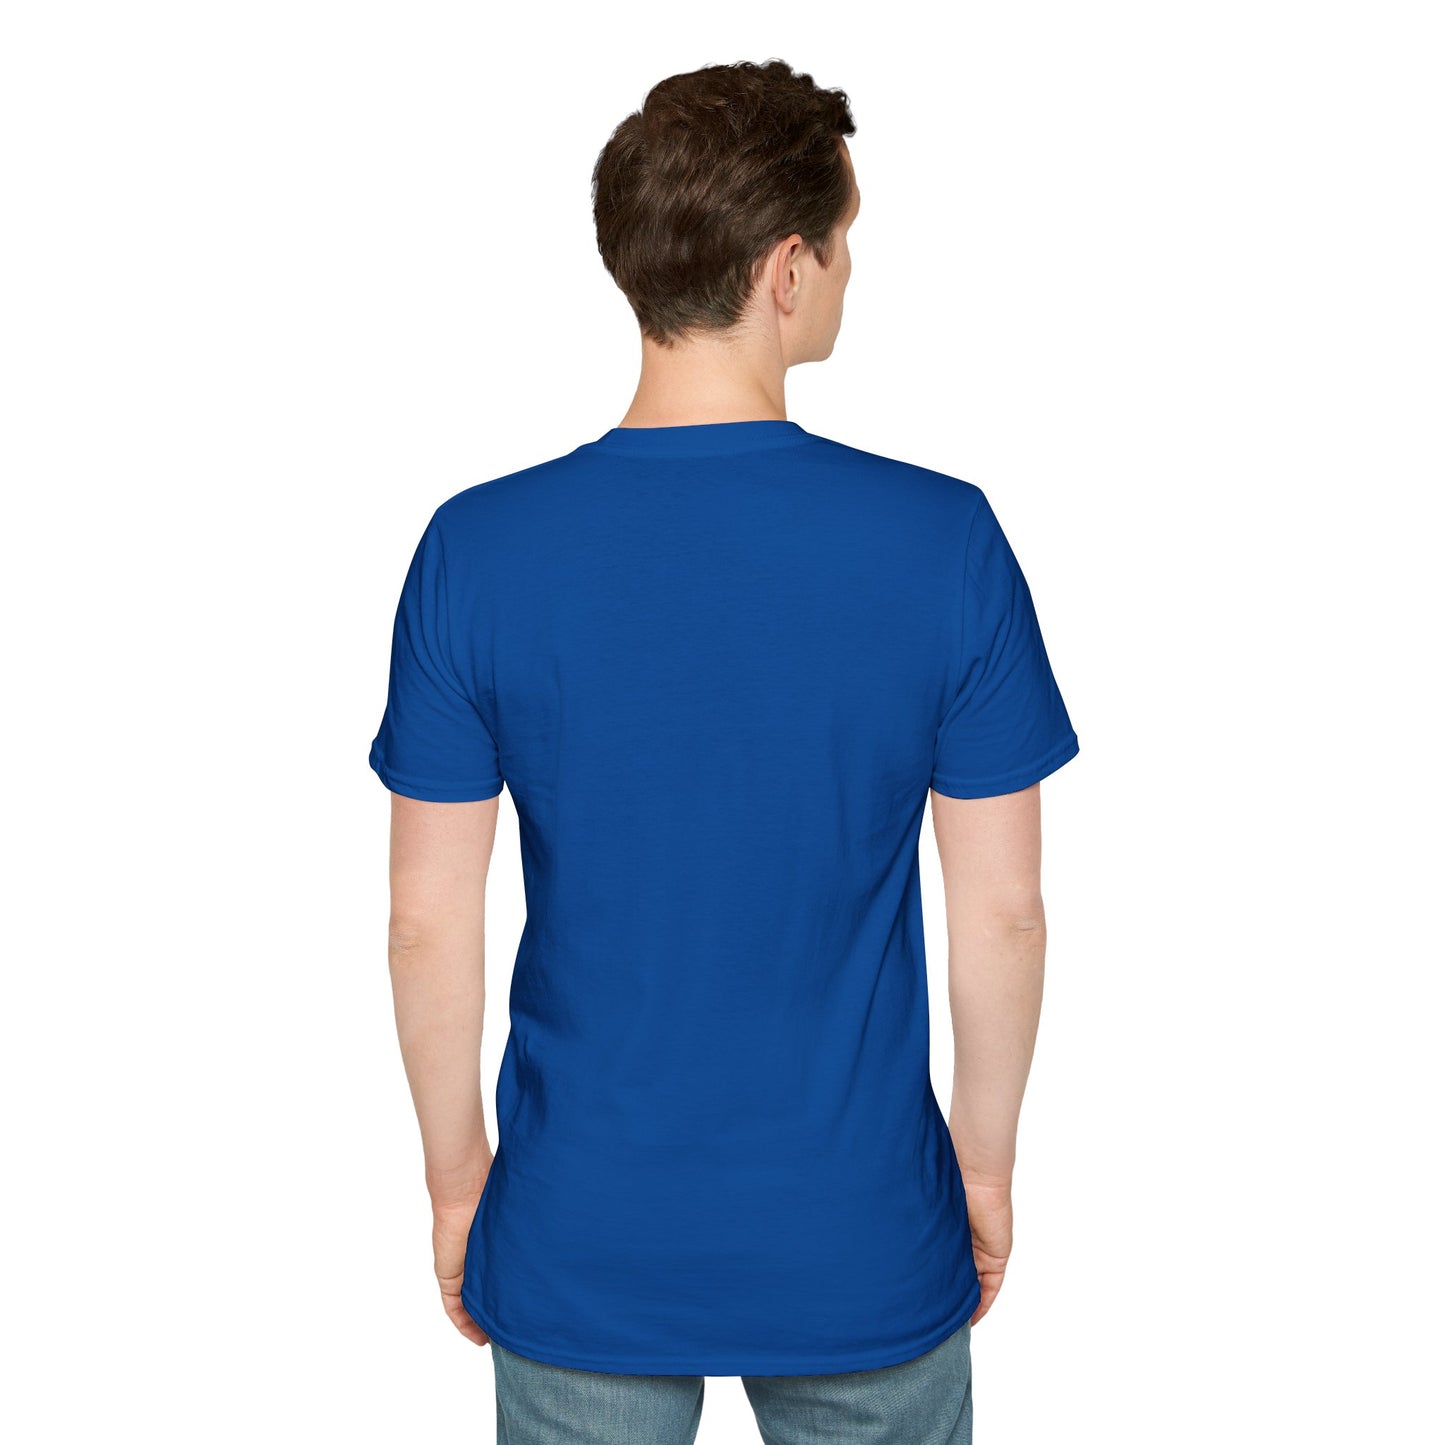 TG-23 Unisex Softstyle T-Shirt